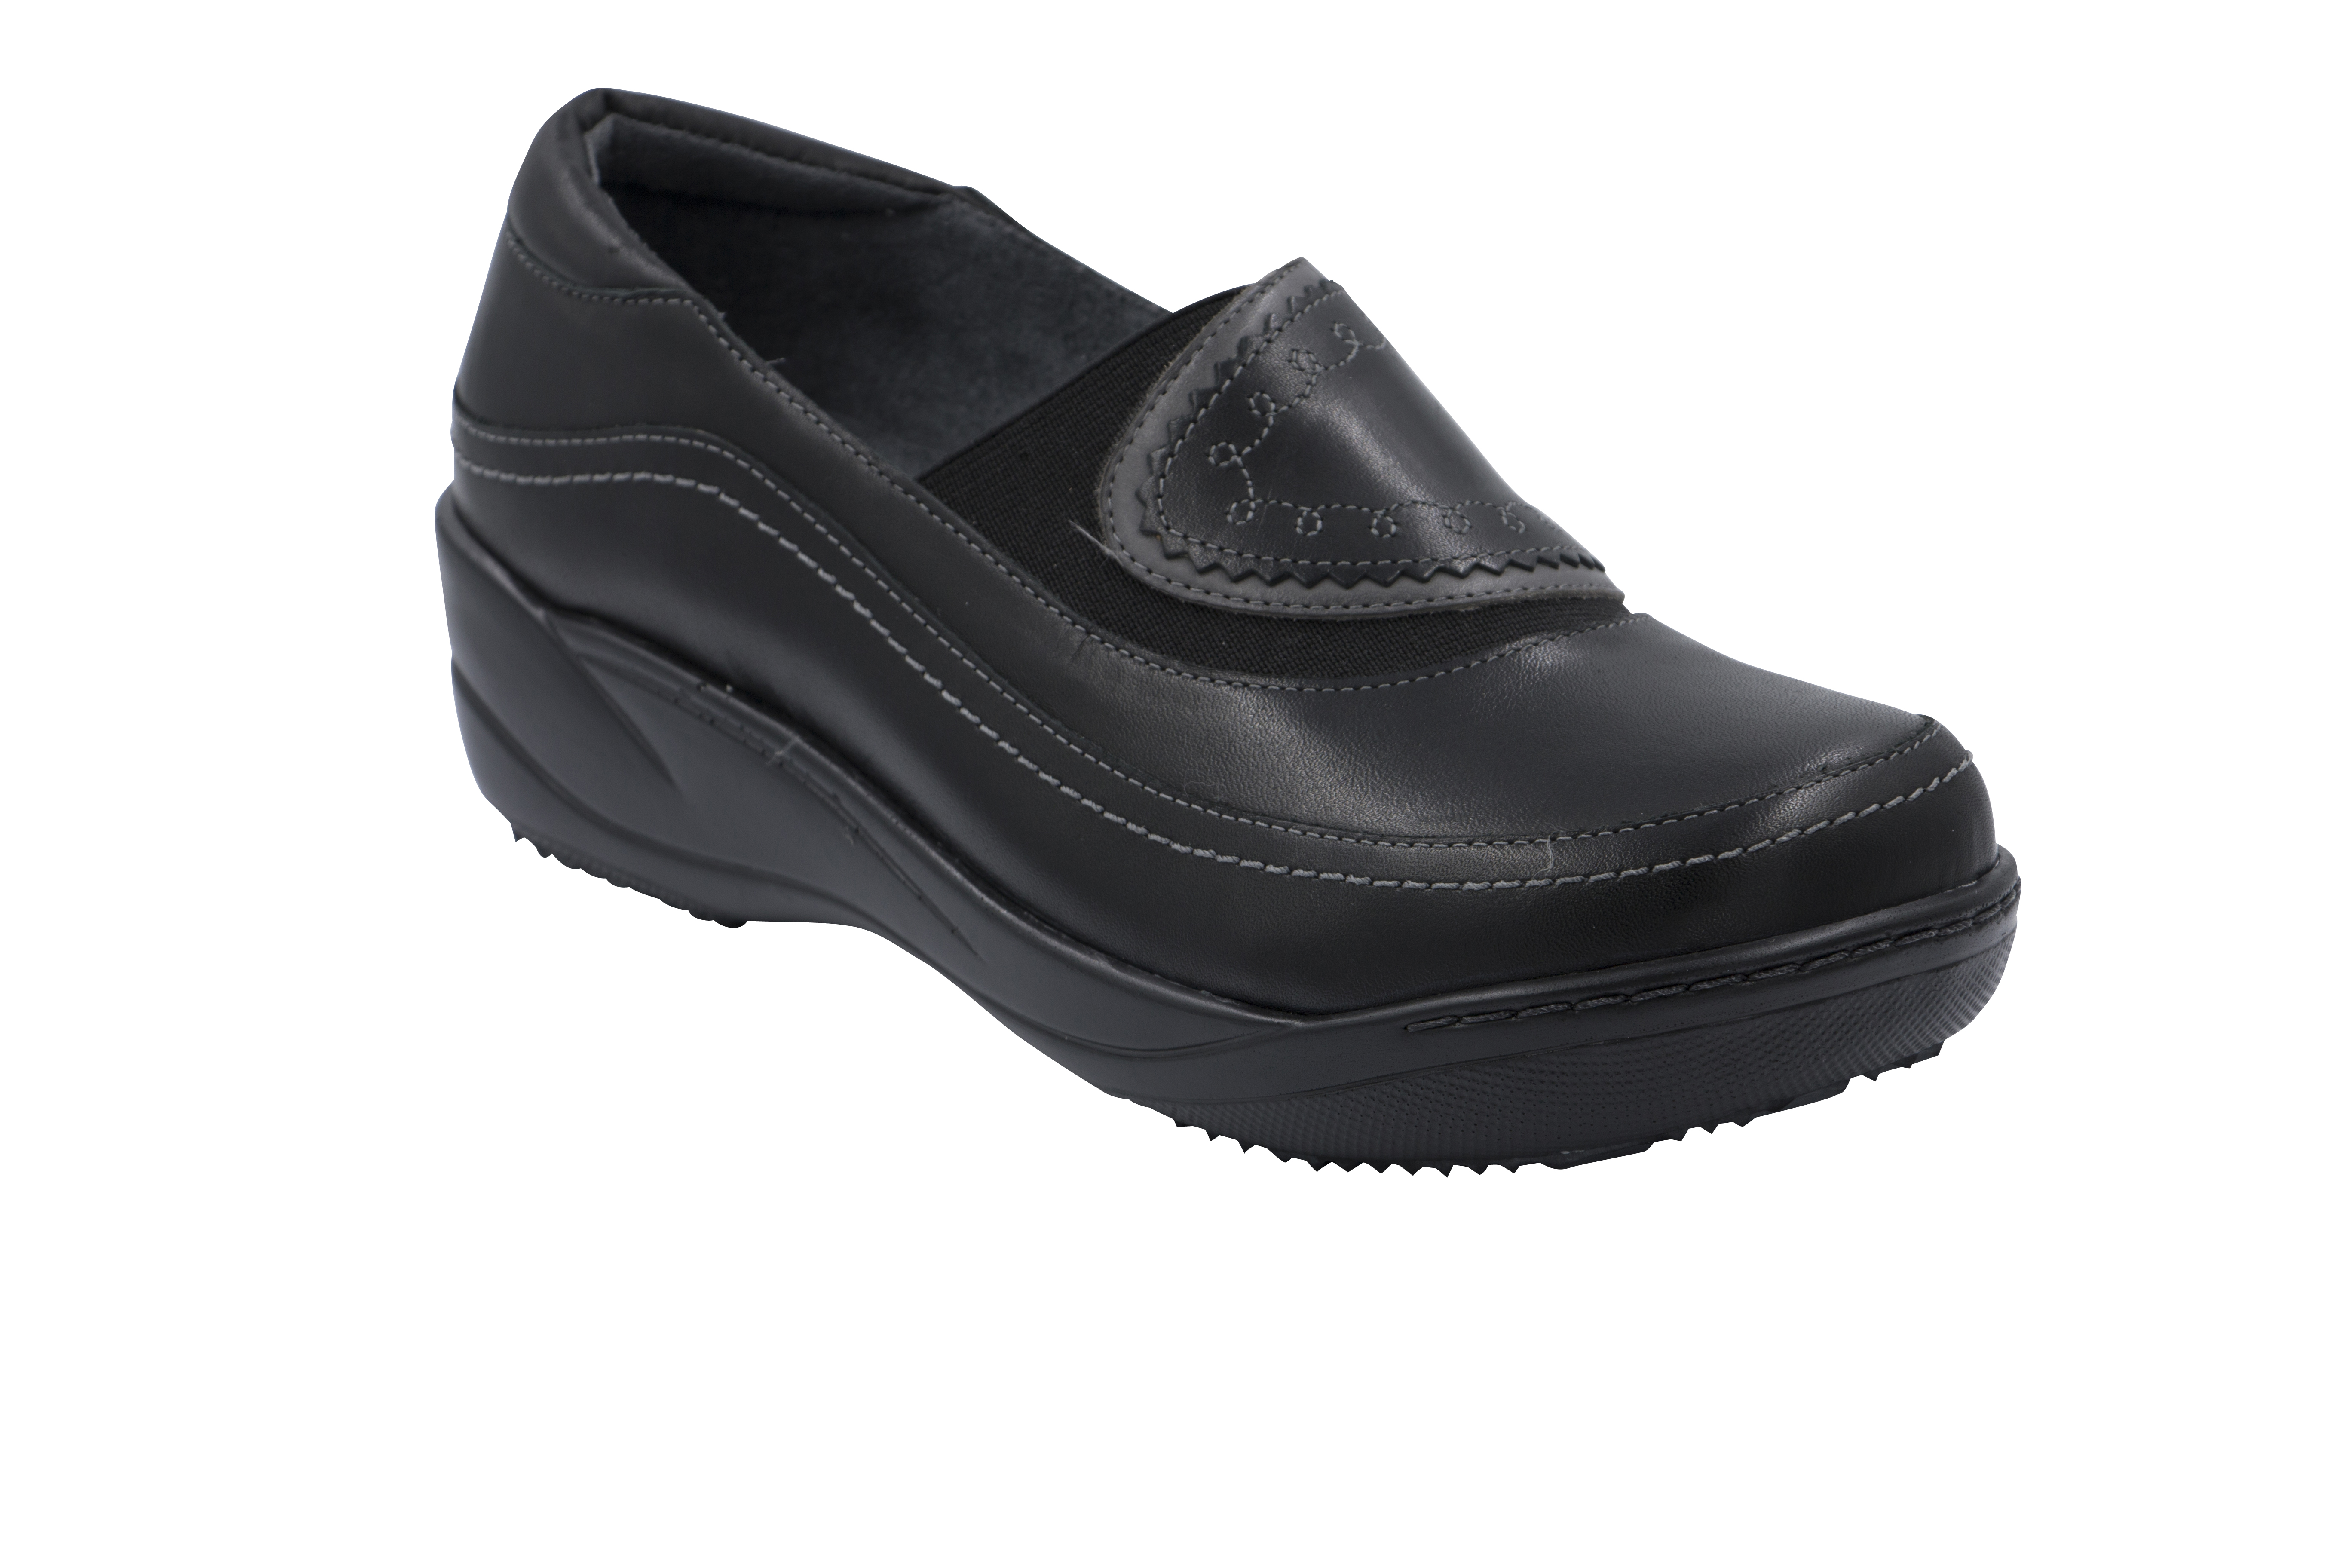 AnyWear Women's Marlene Black Leather Step In Shoe